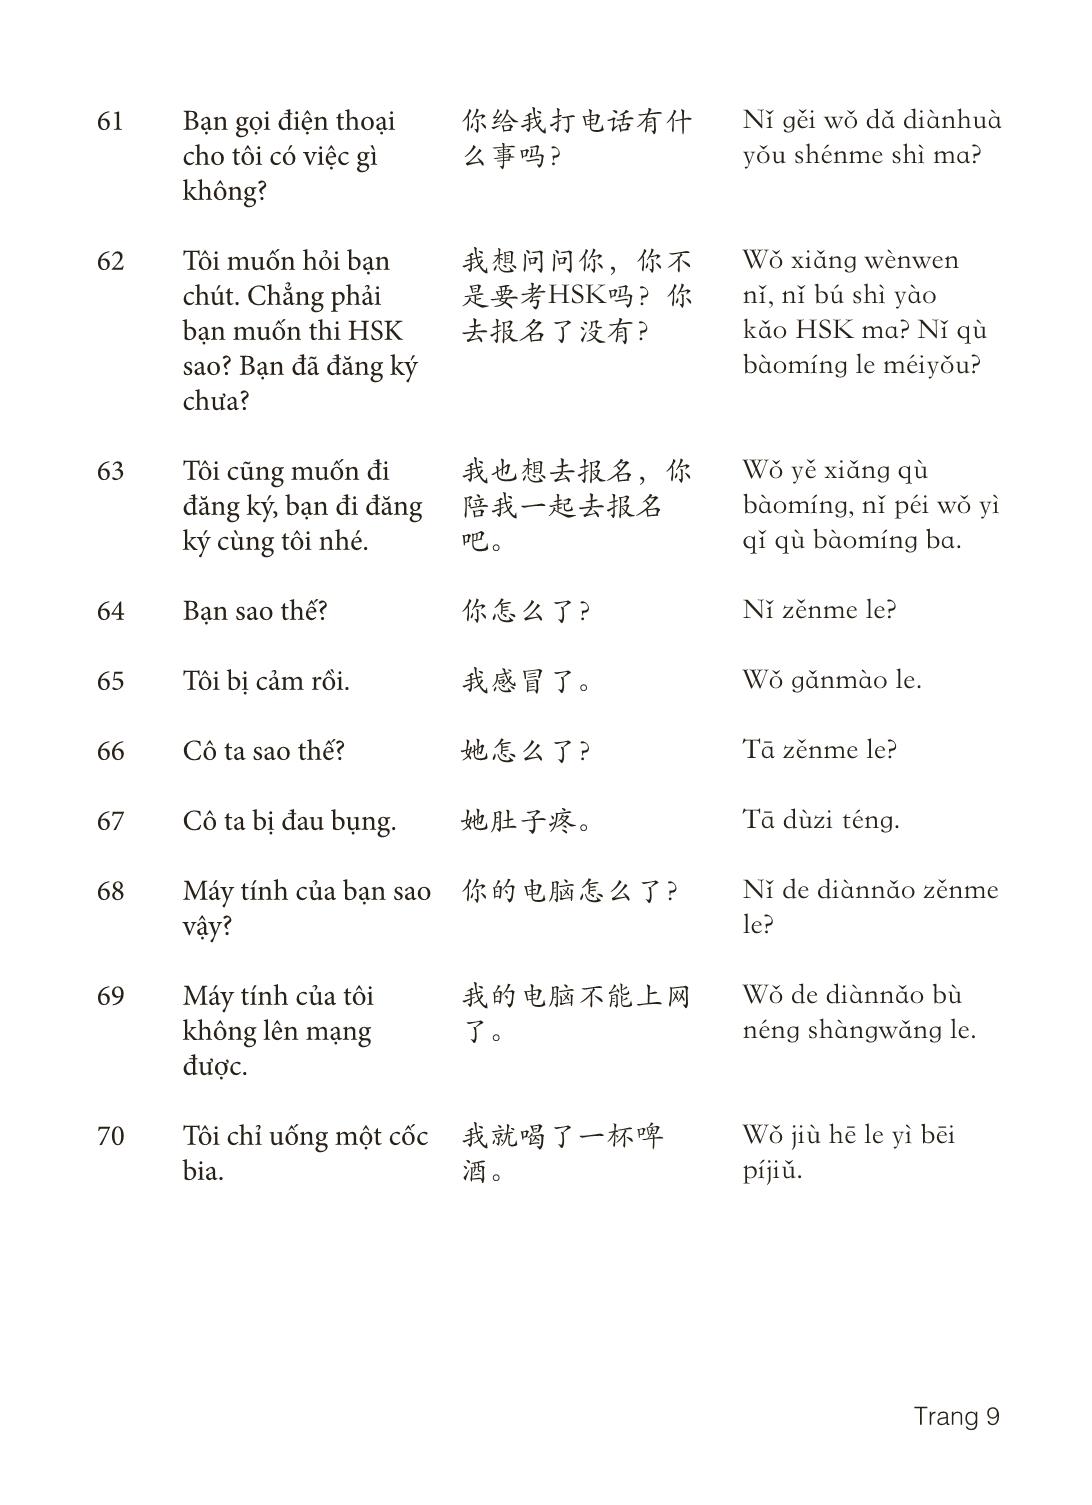 3000 Câu đàm thoại tiếng Hoa - Phần 9 trang 9